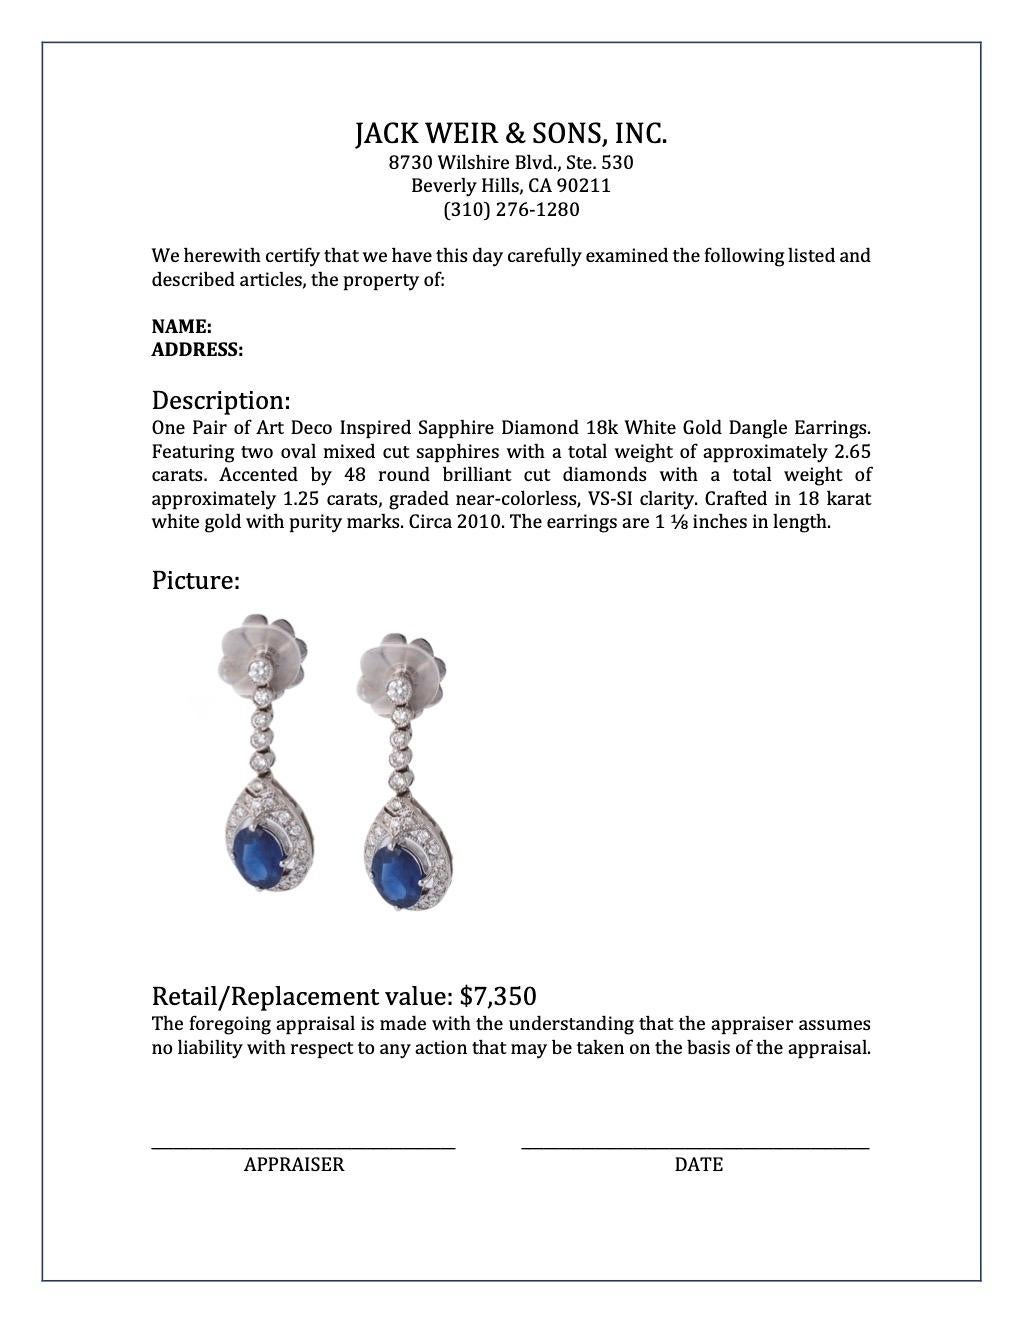 Art Deco Inspired Sapphire Diamond 18k White Gold Dangle Earrings 2